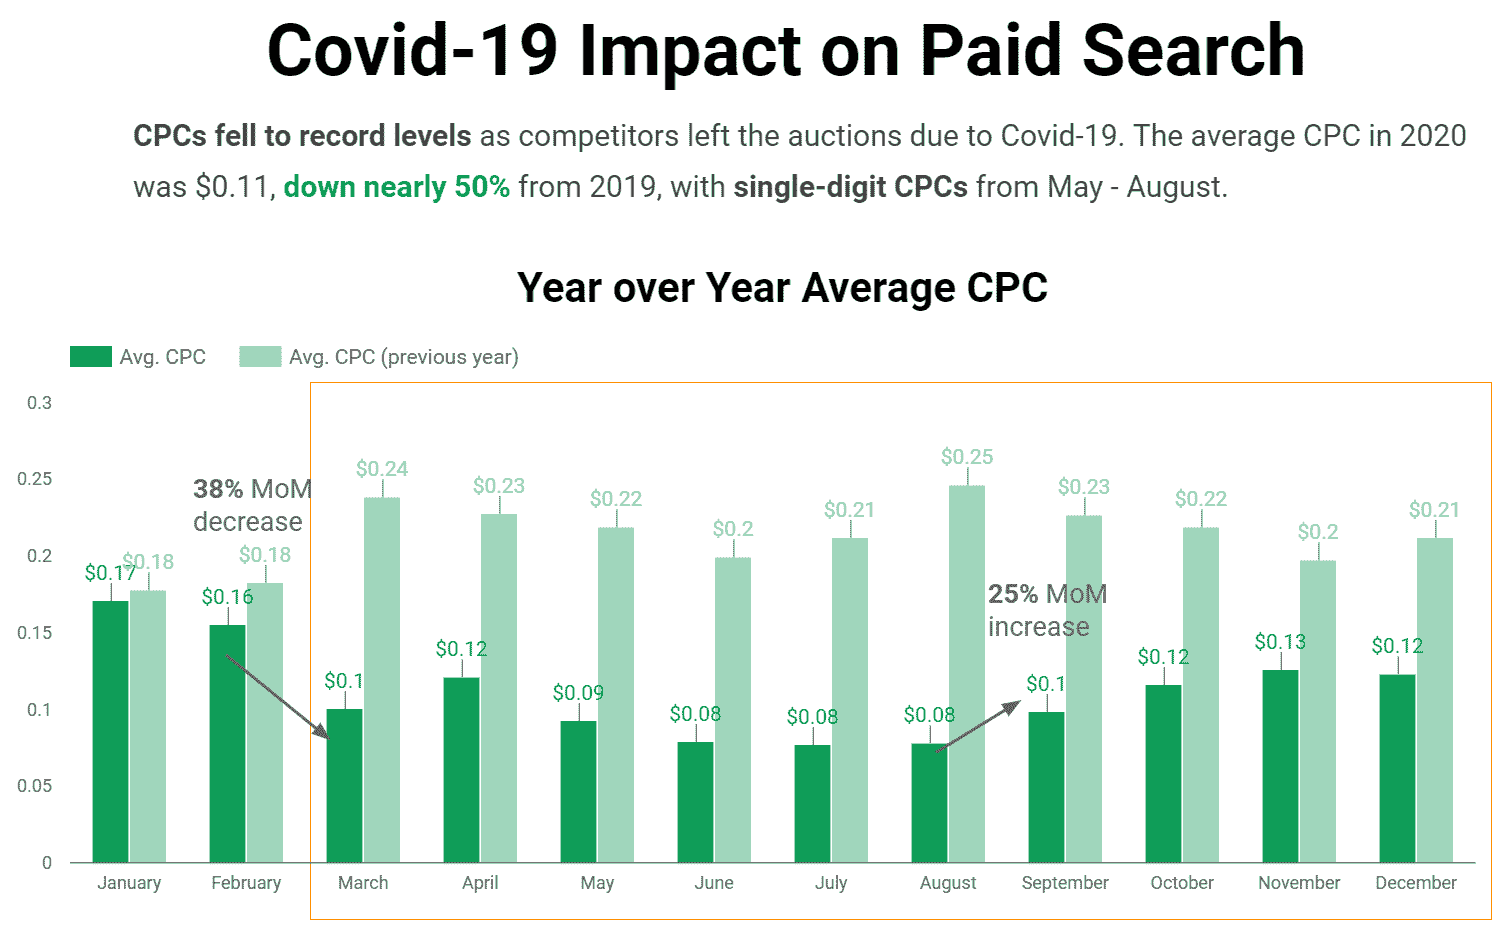 Auswirkungen von Covid-19 auf die bezahlte Suchtabelle